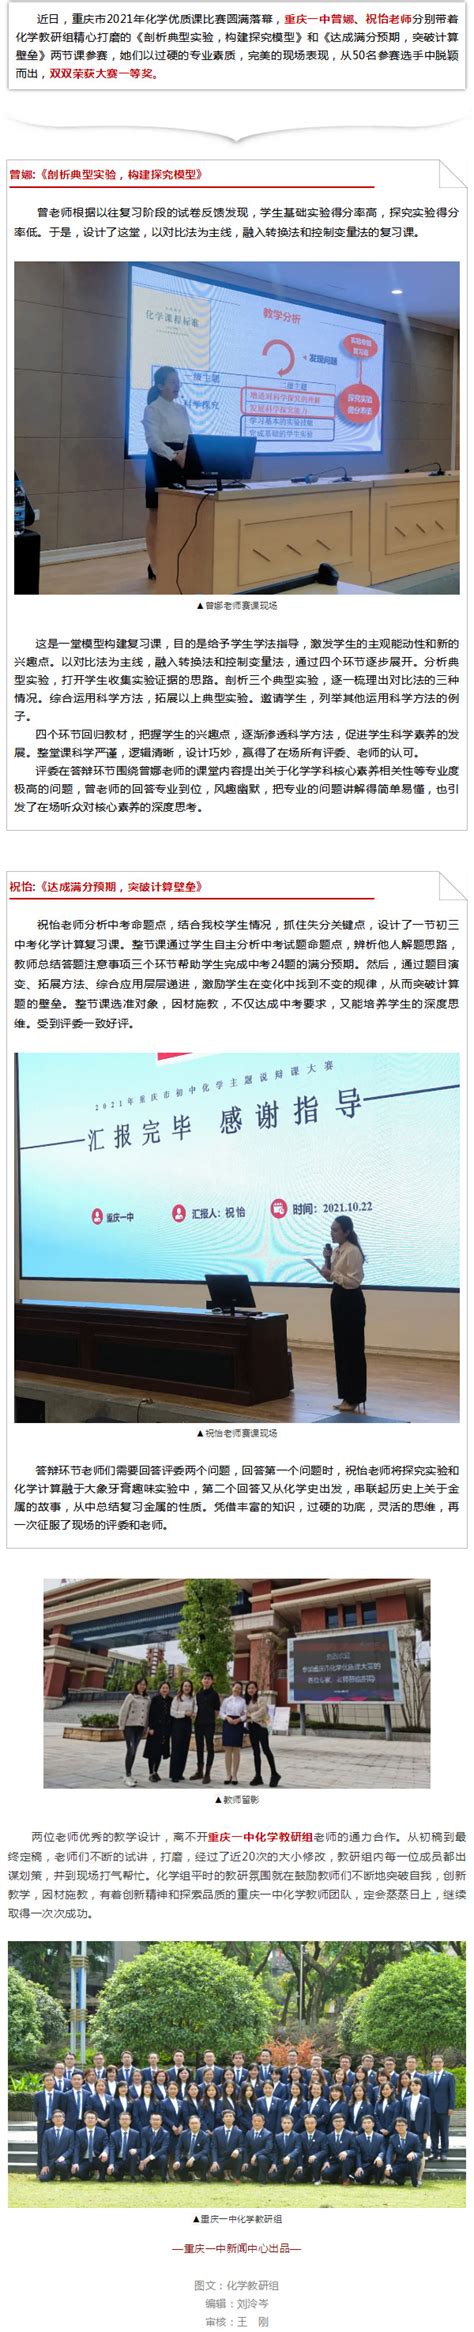 曾娜、祝怡荣获重庆市2021年化学优质课比赛一等奖